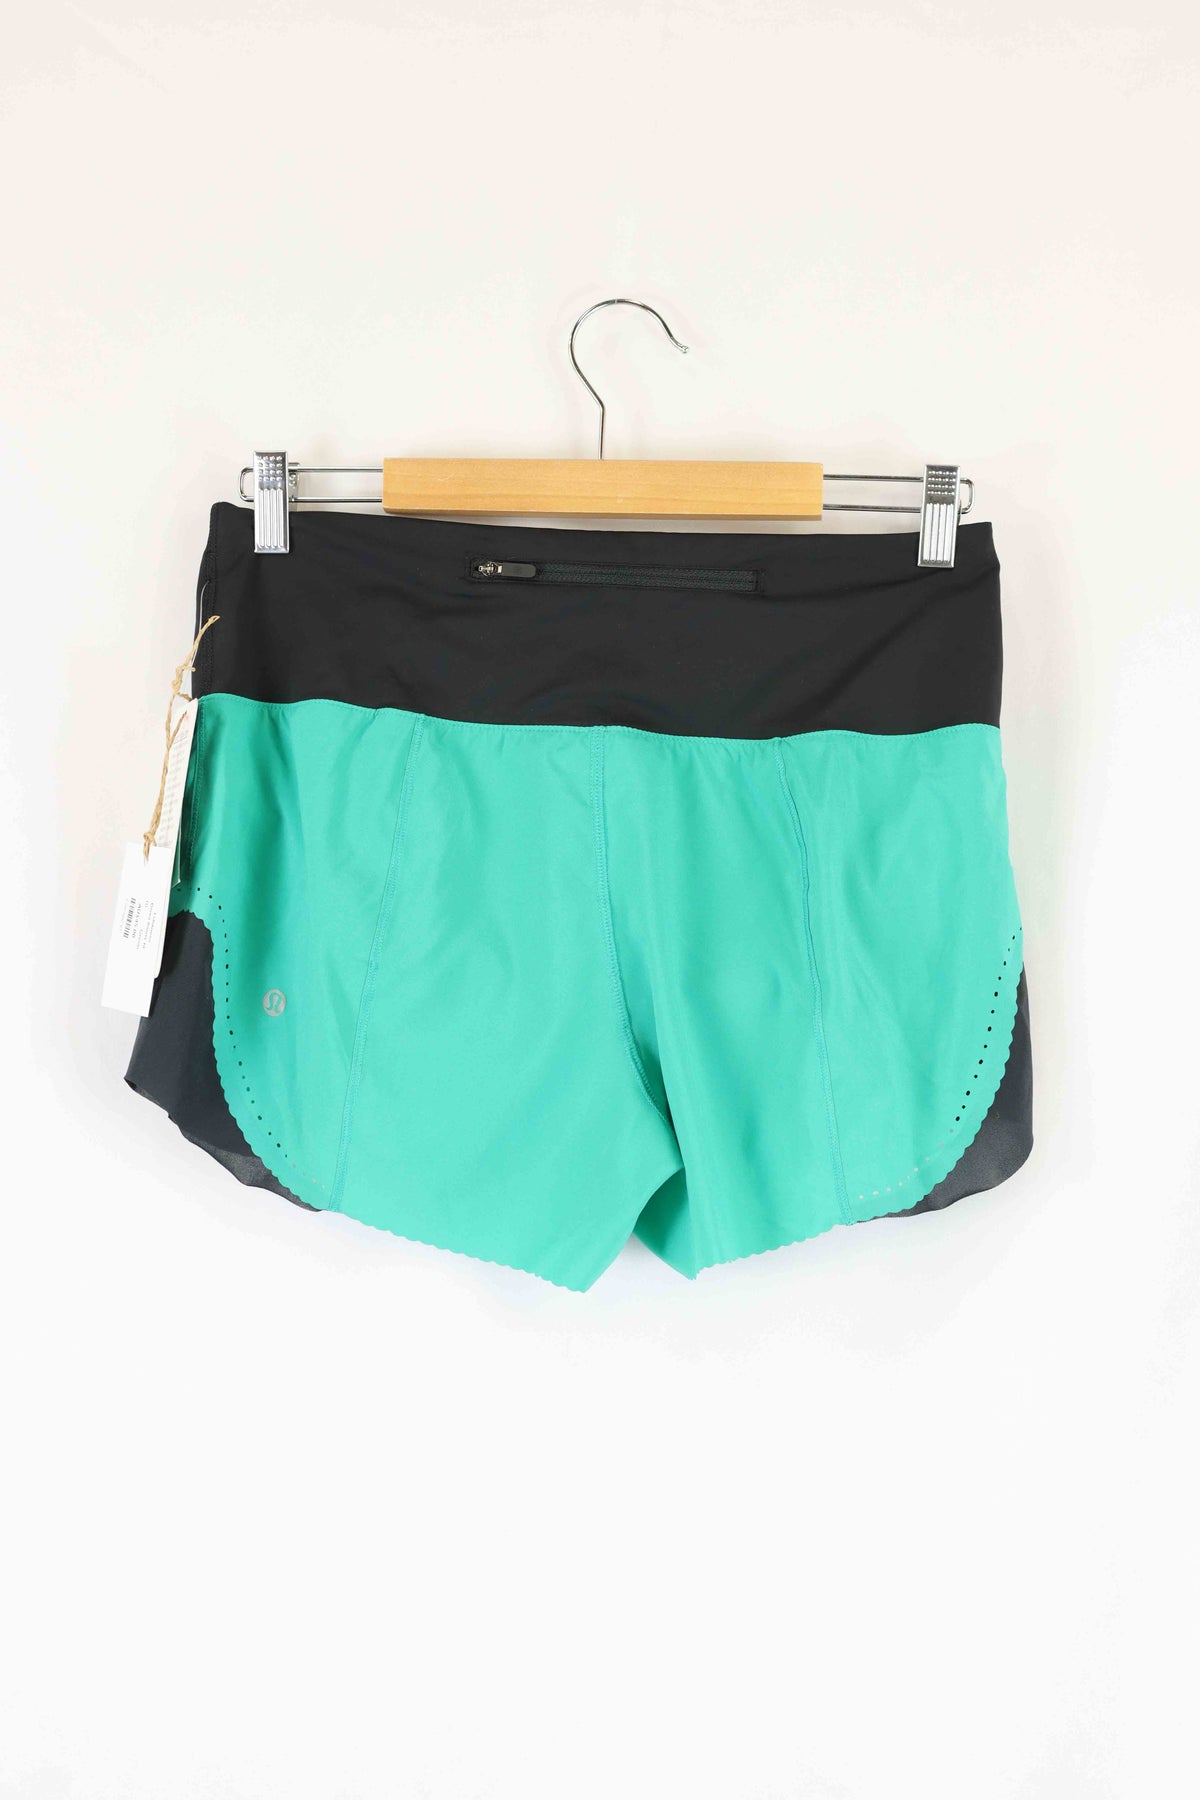 Lululemon Green Shorts 10